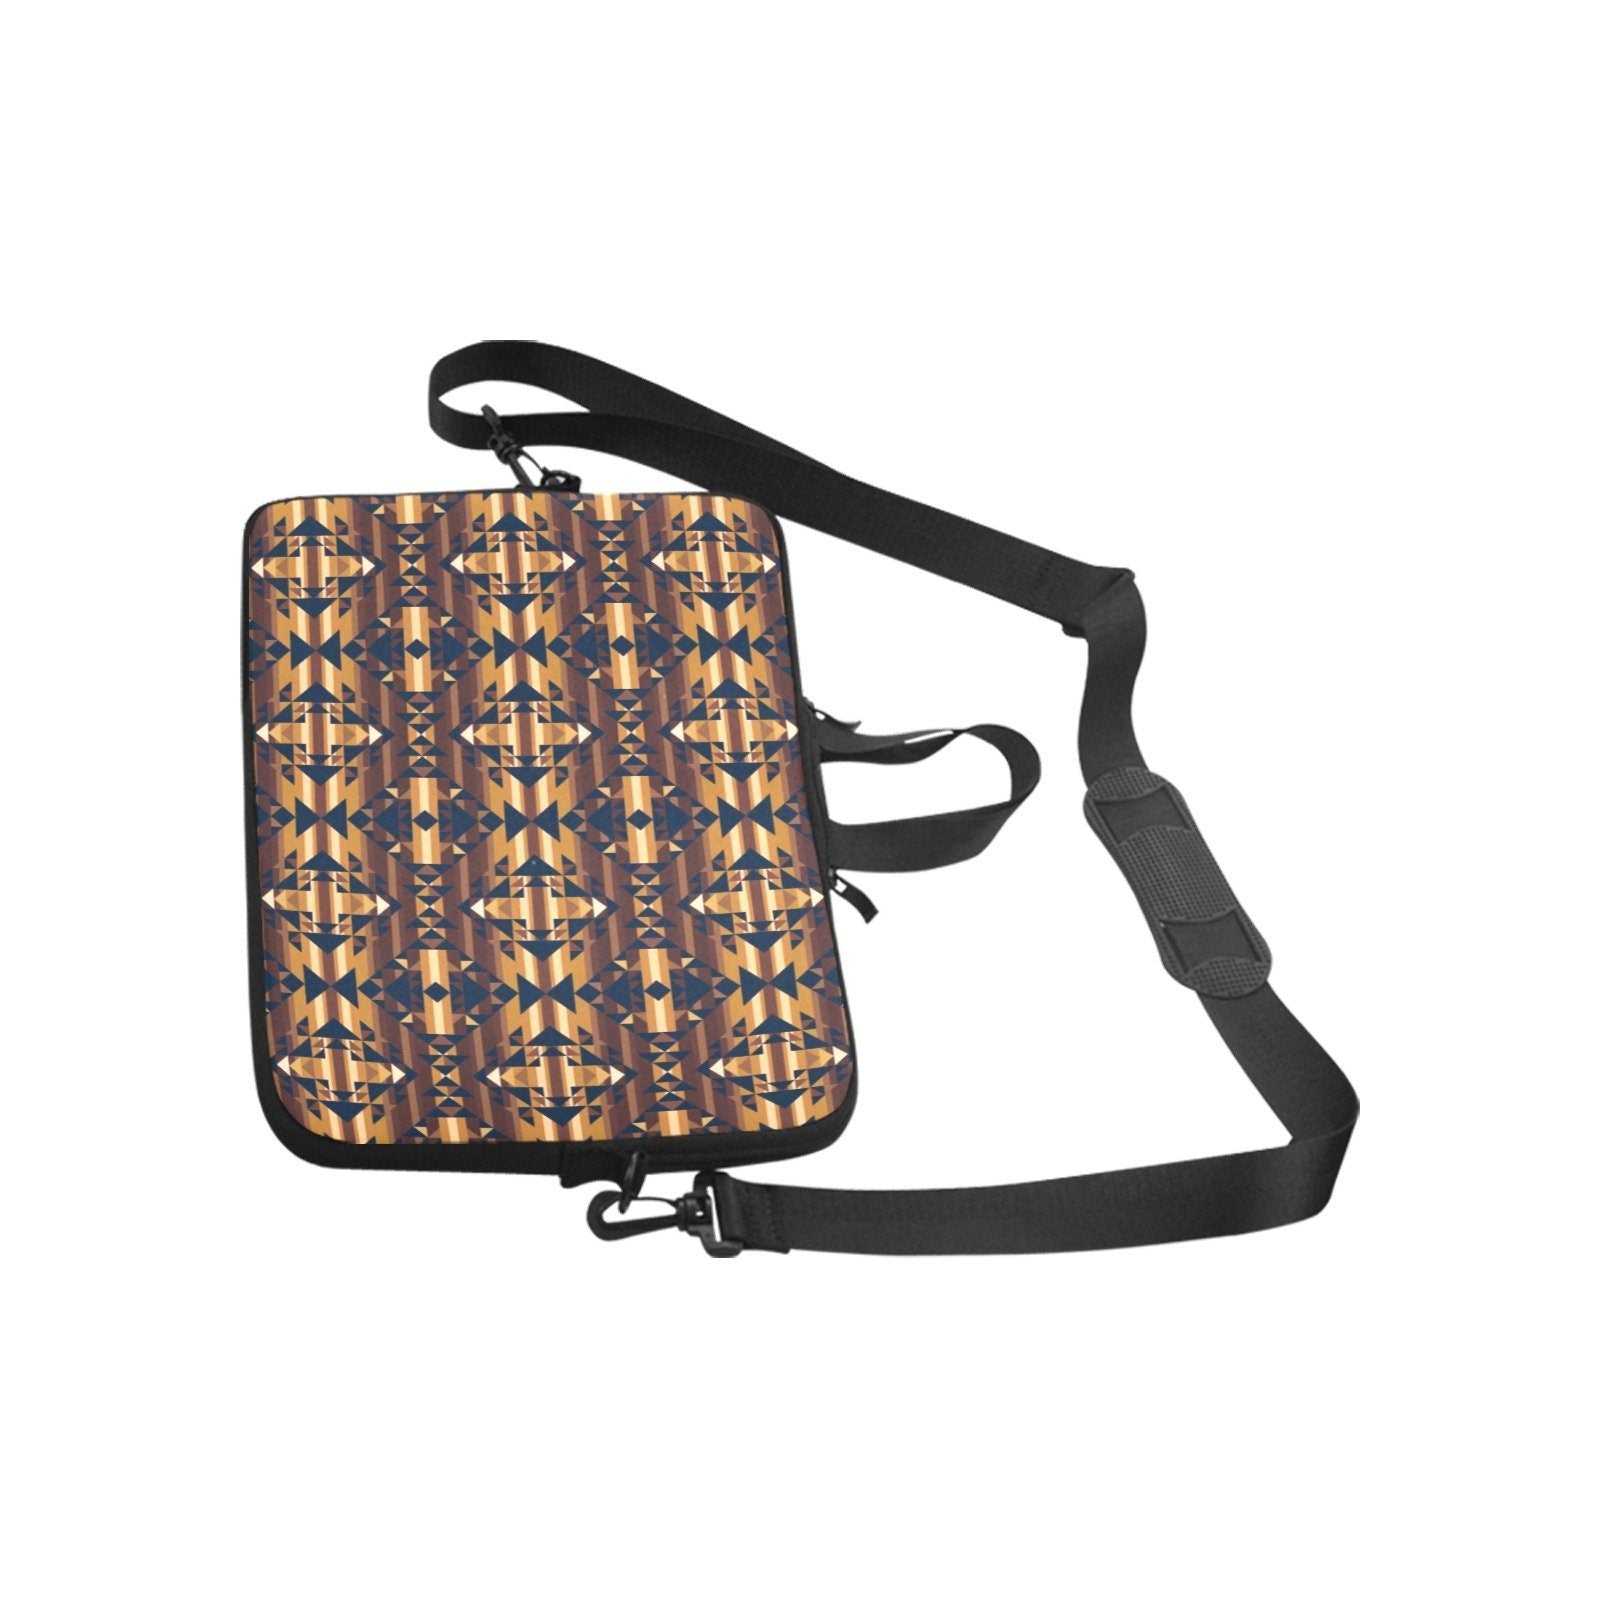 Marron Cloud Laptop Handbags 10" bag e-joyer 